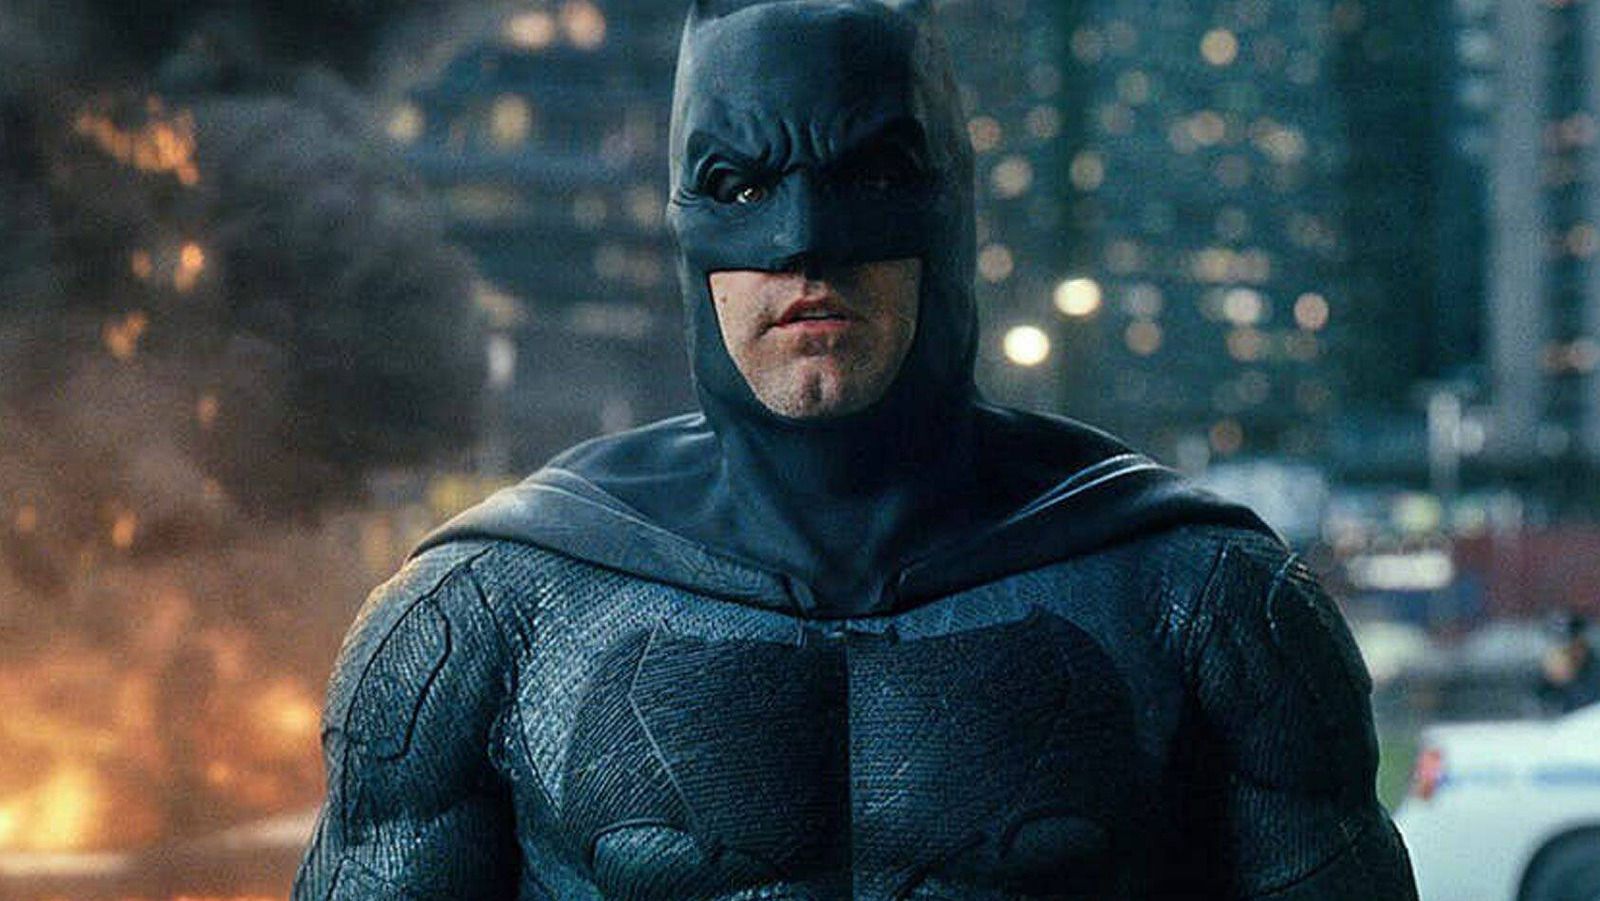 Batman (Ben Affleck) - Justice League